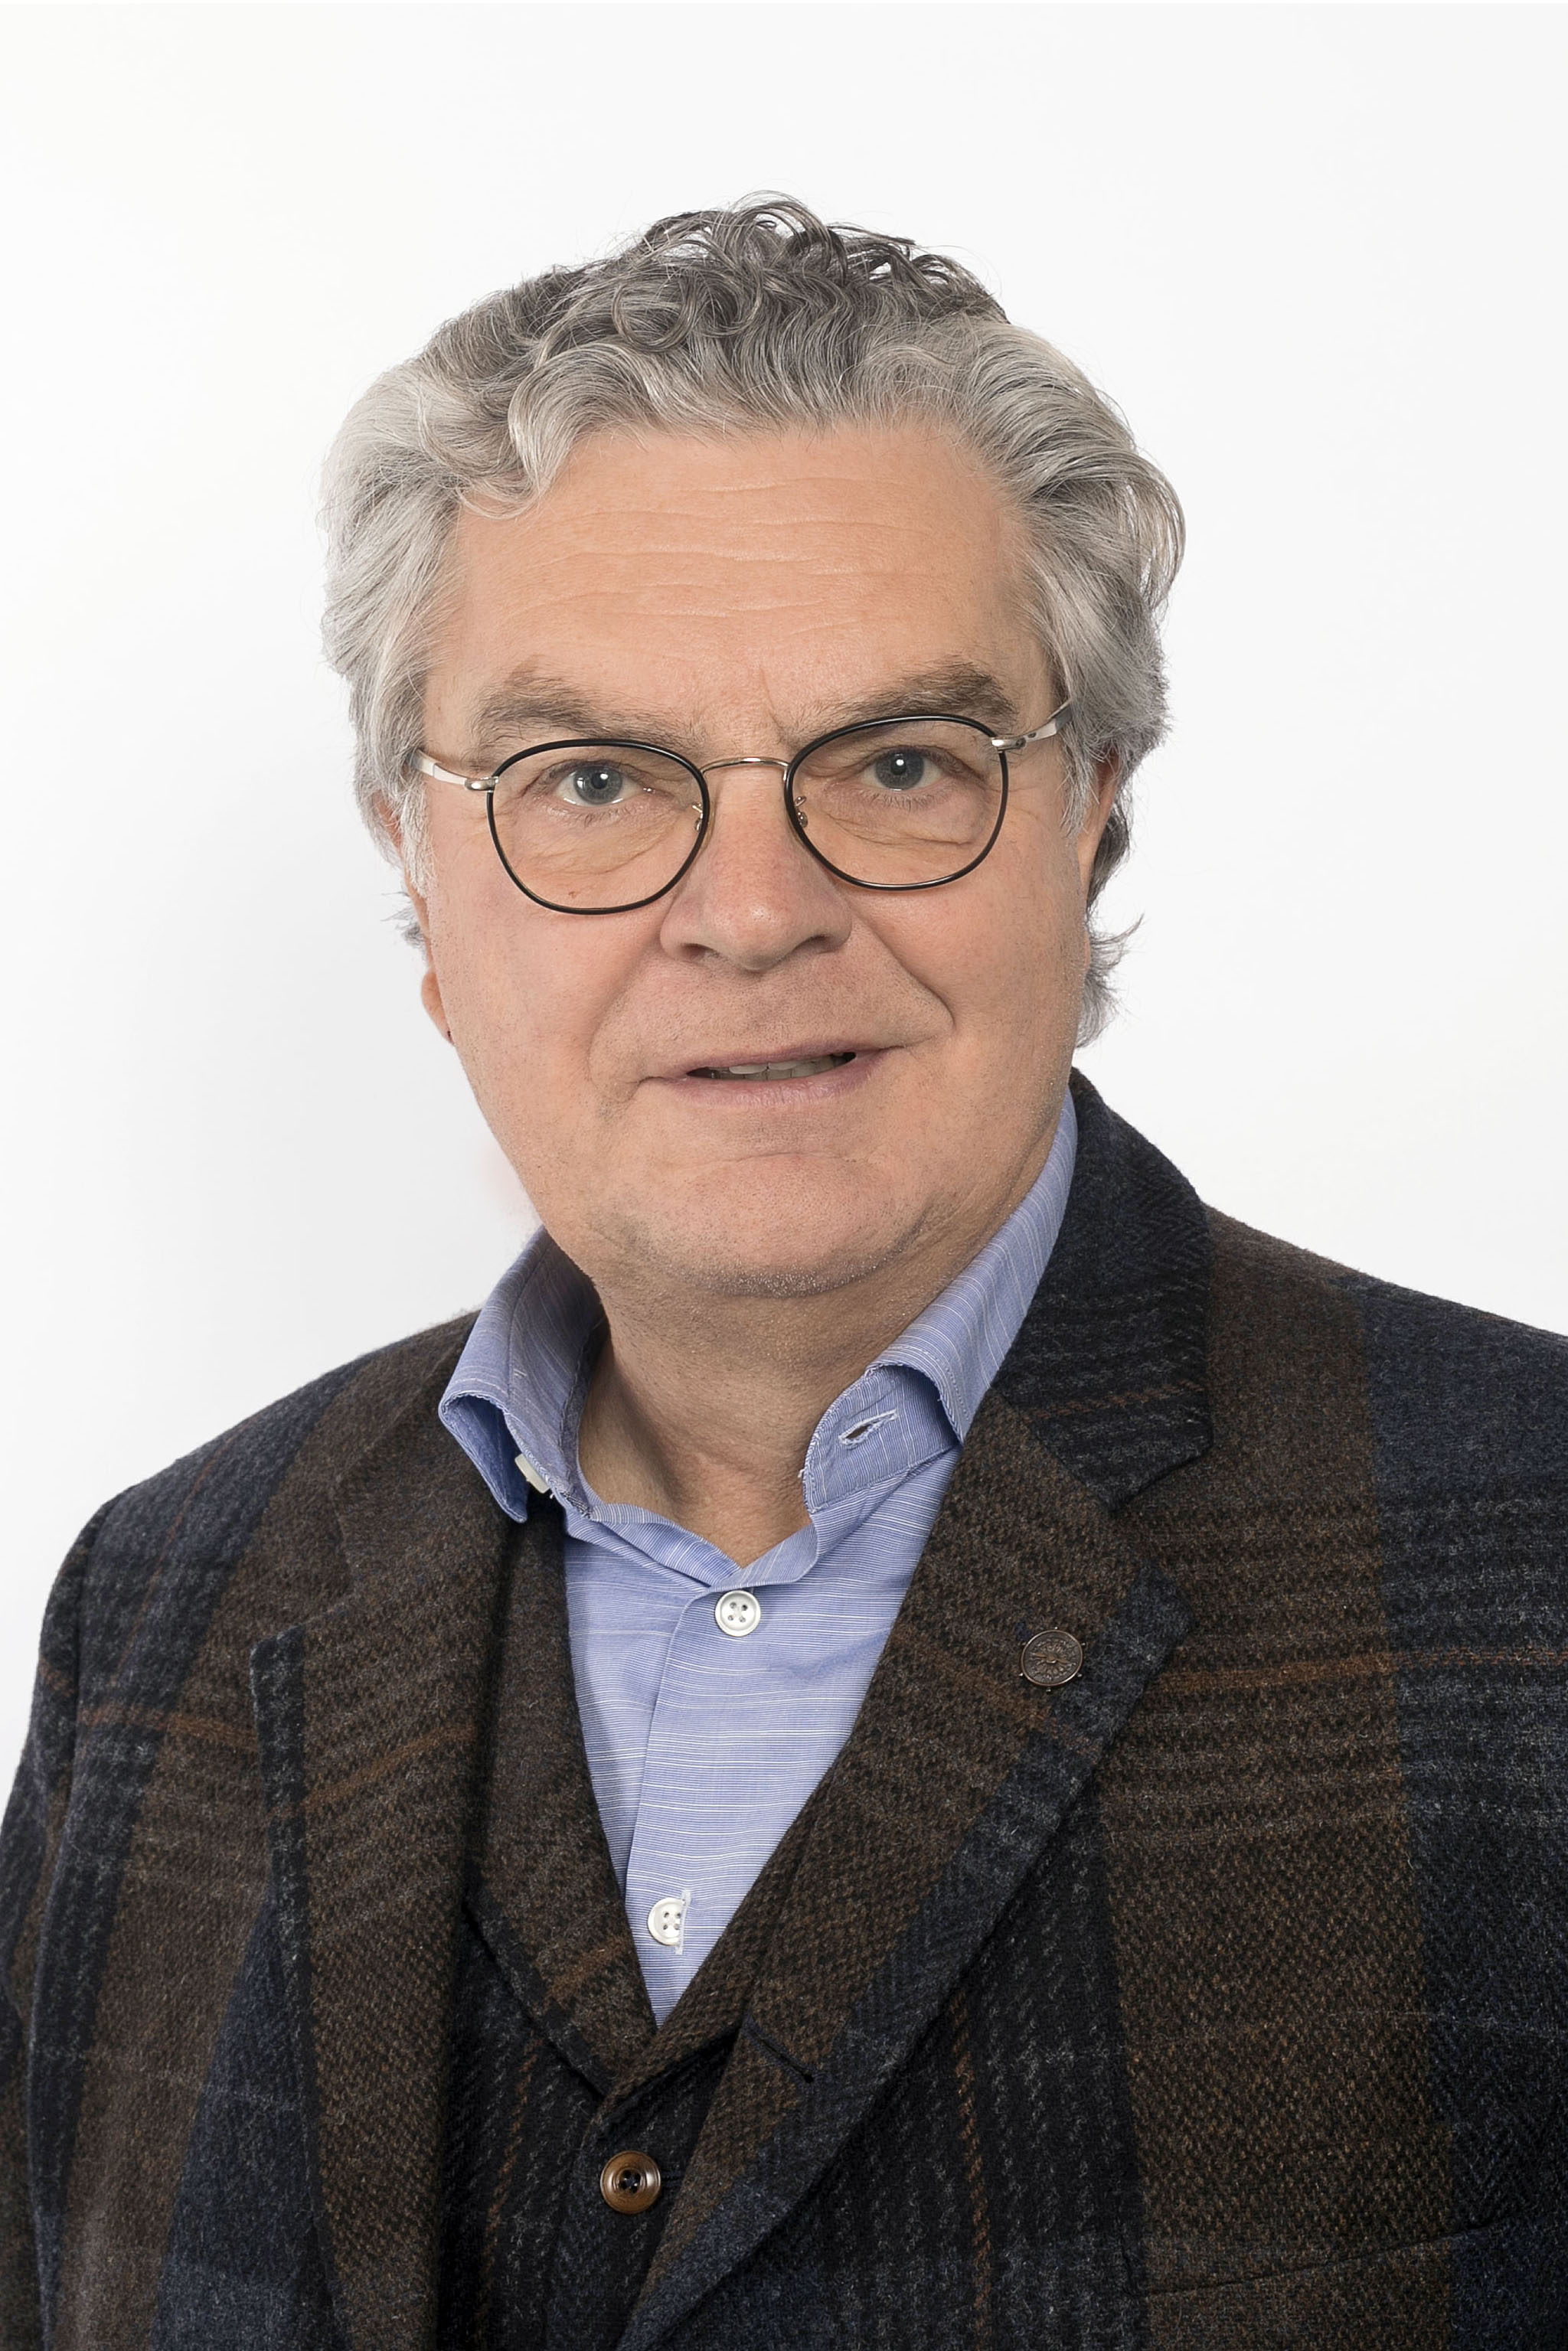 Jürgen Zurheide, Dozent des Studientgangs MBA Verantwortung, Führung und Kommunikation der Campus-Akademie der Universität Bayreuth